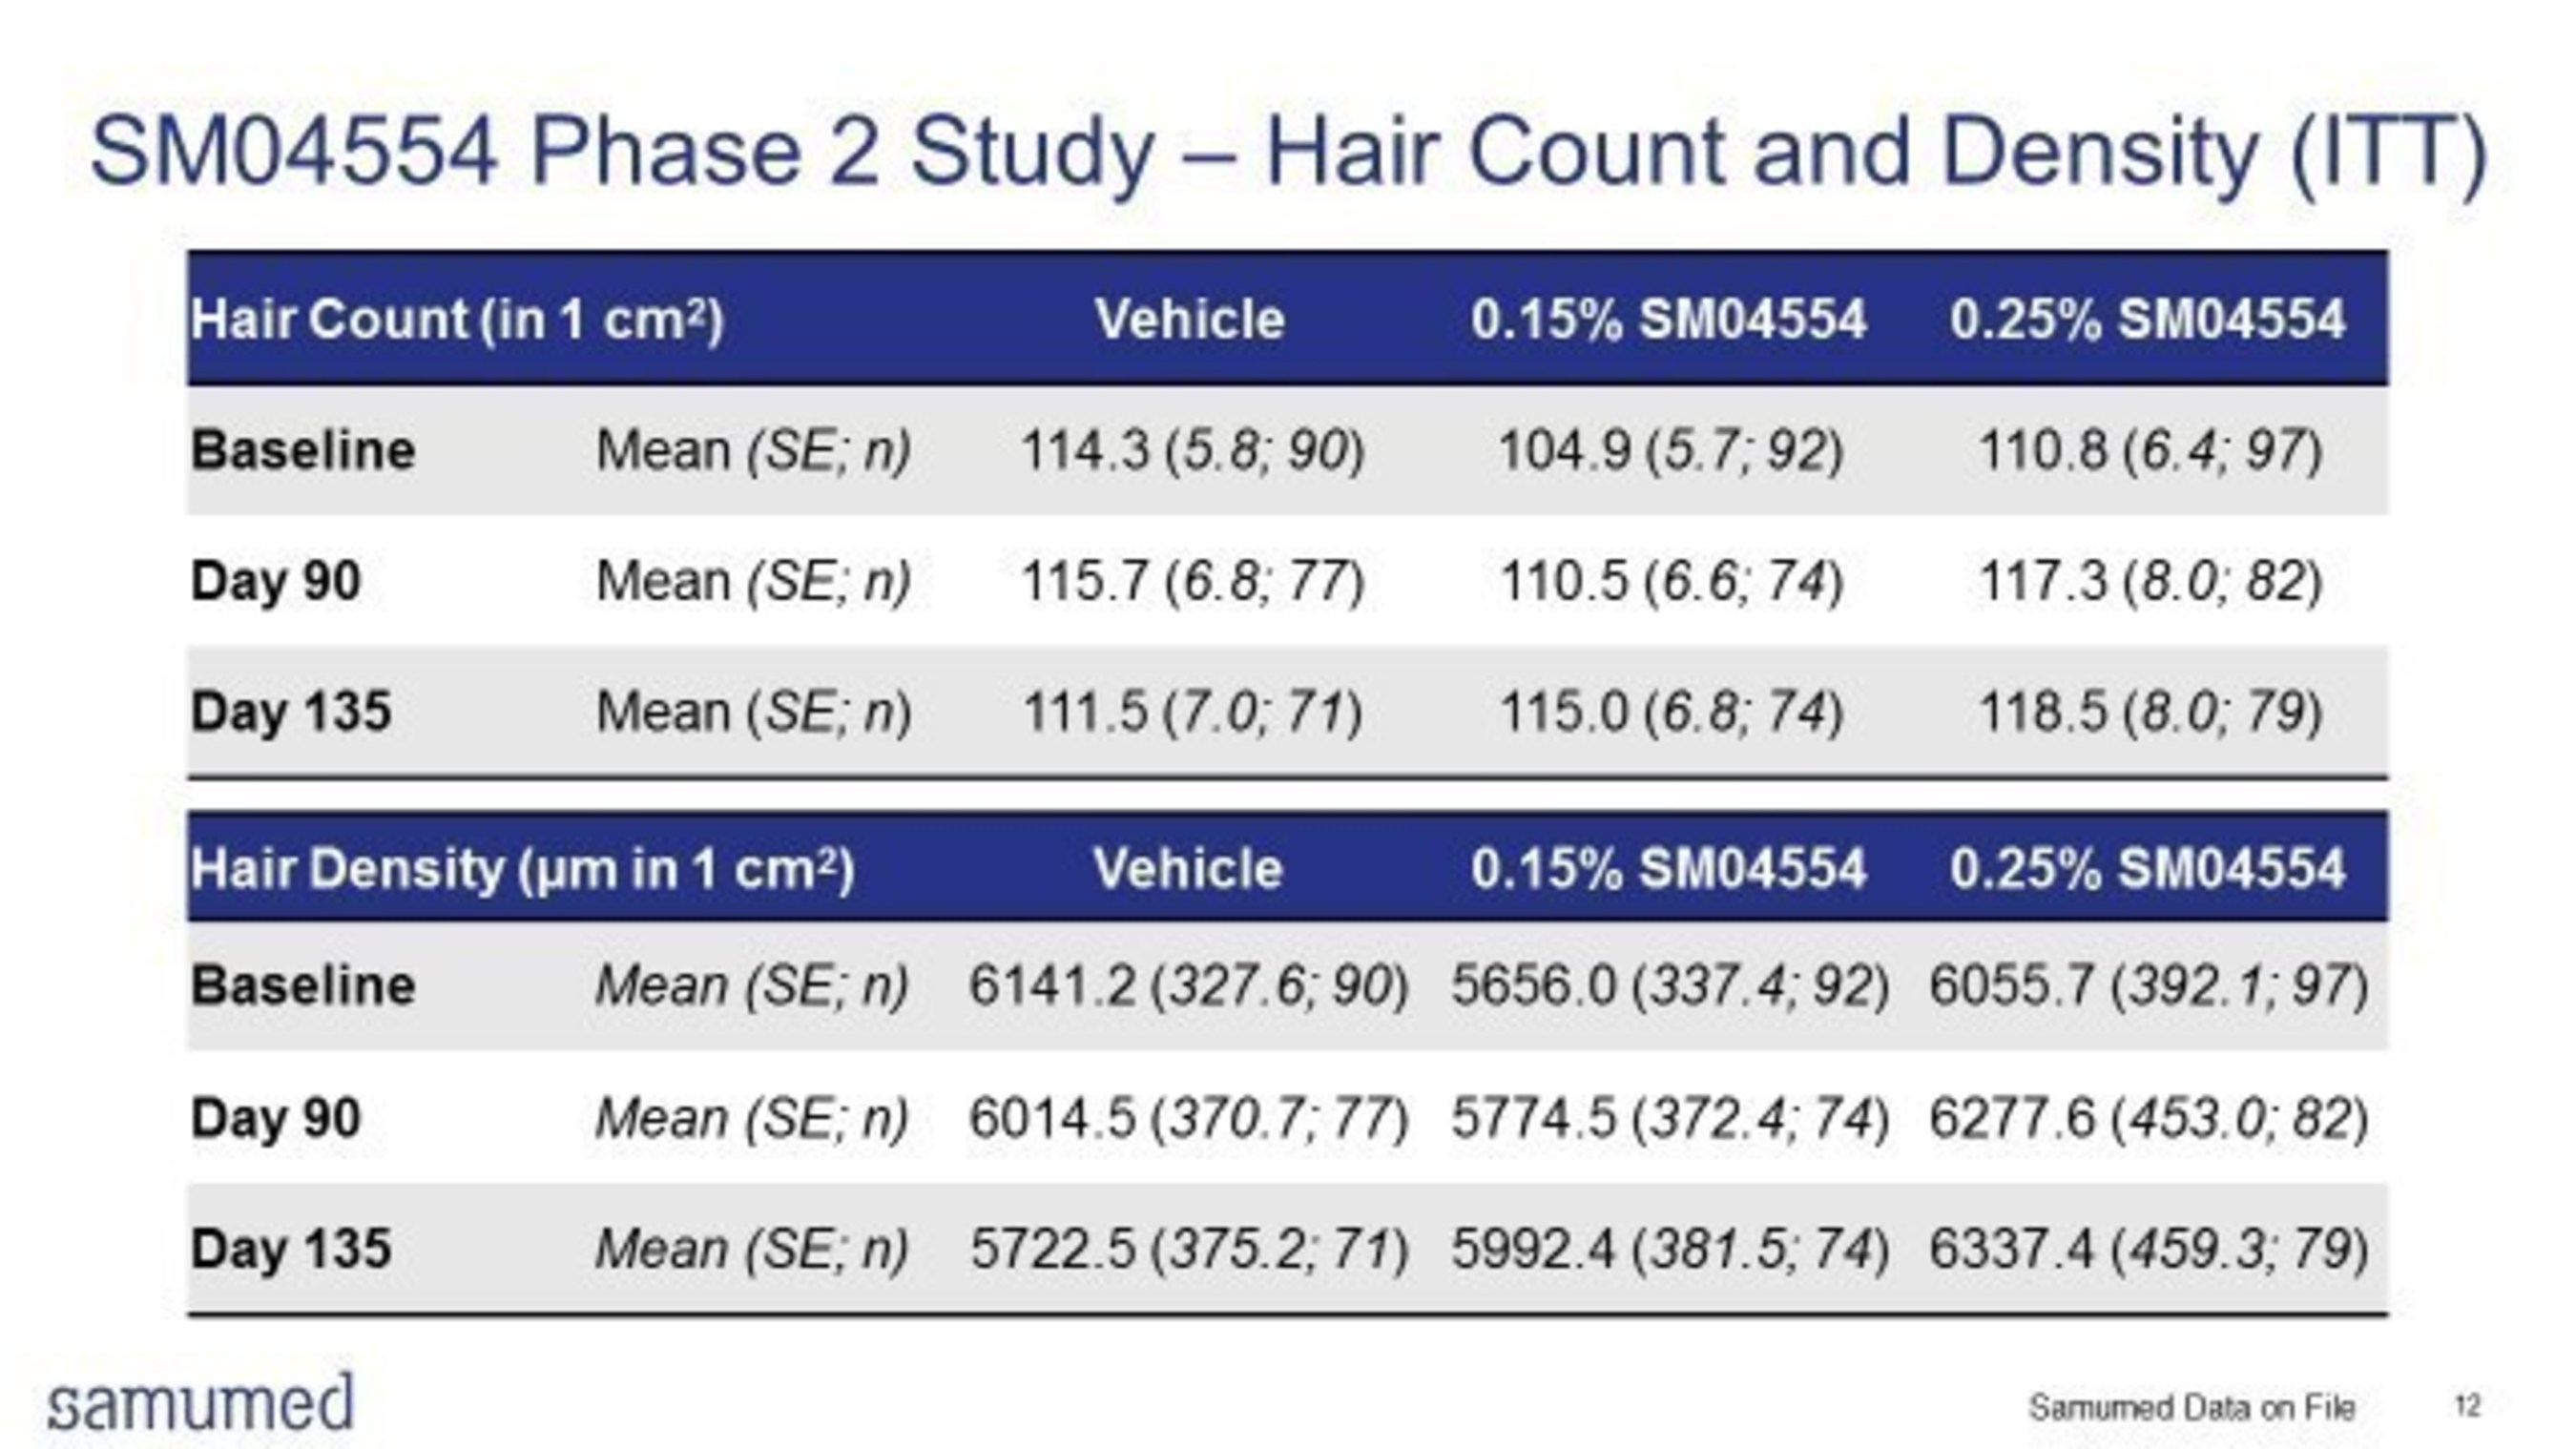 SM04554第2期研究-头发数量和密度(ITT)